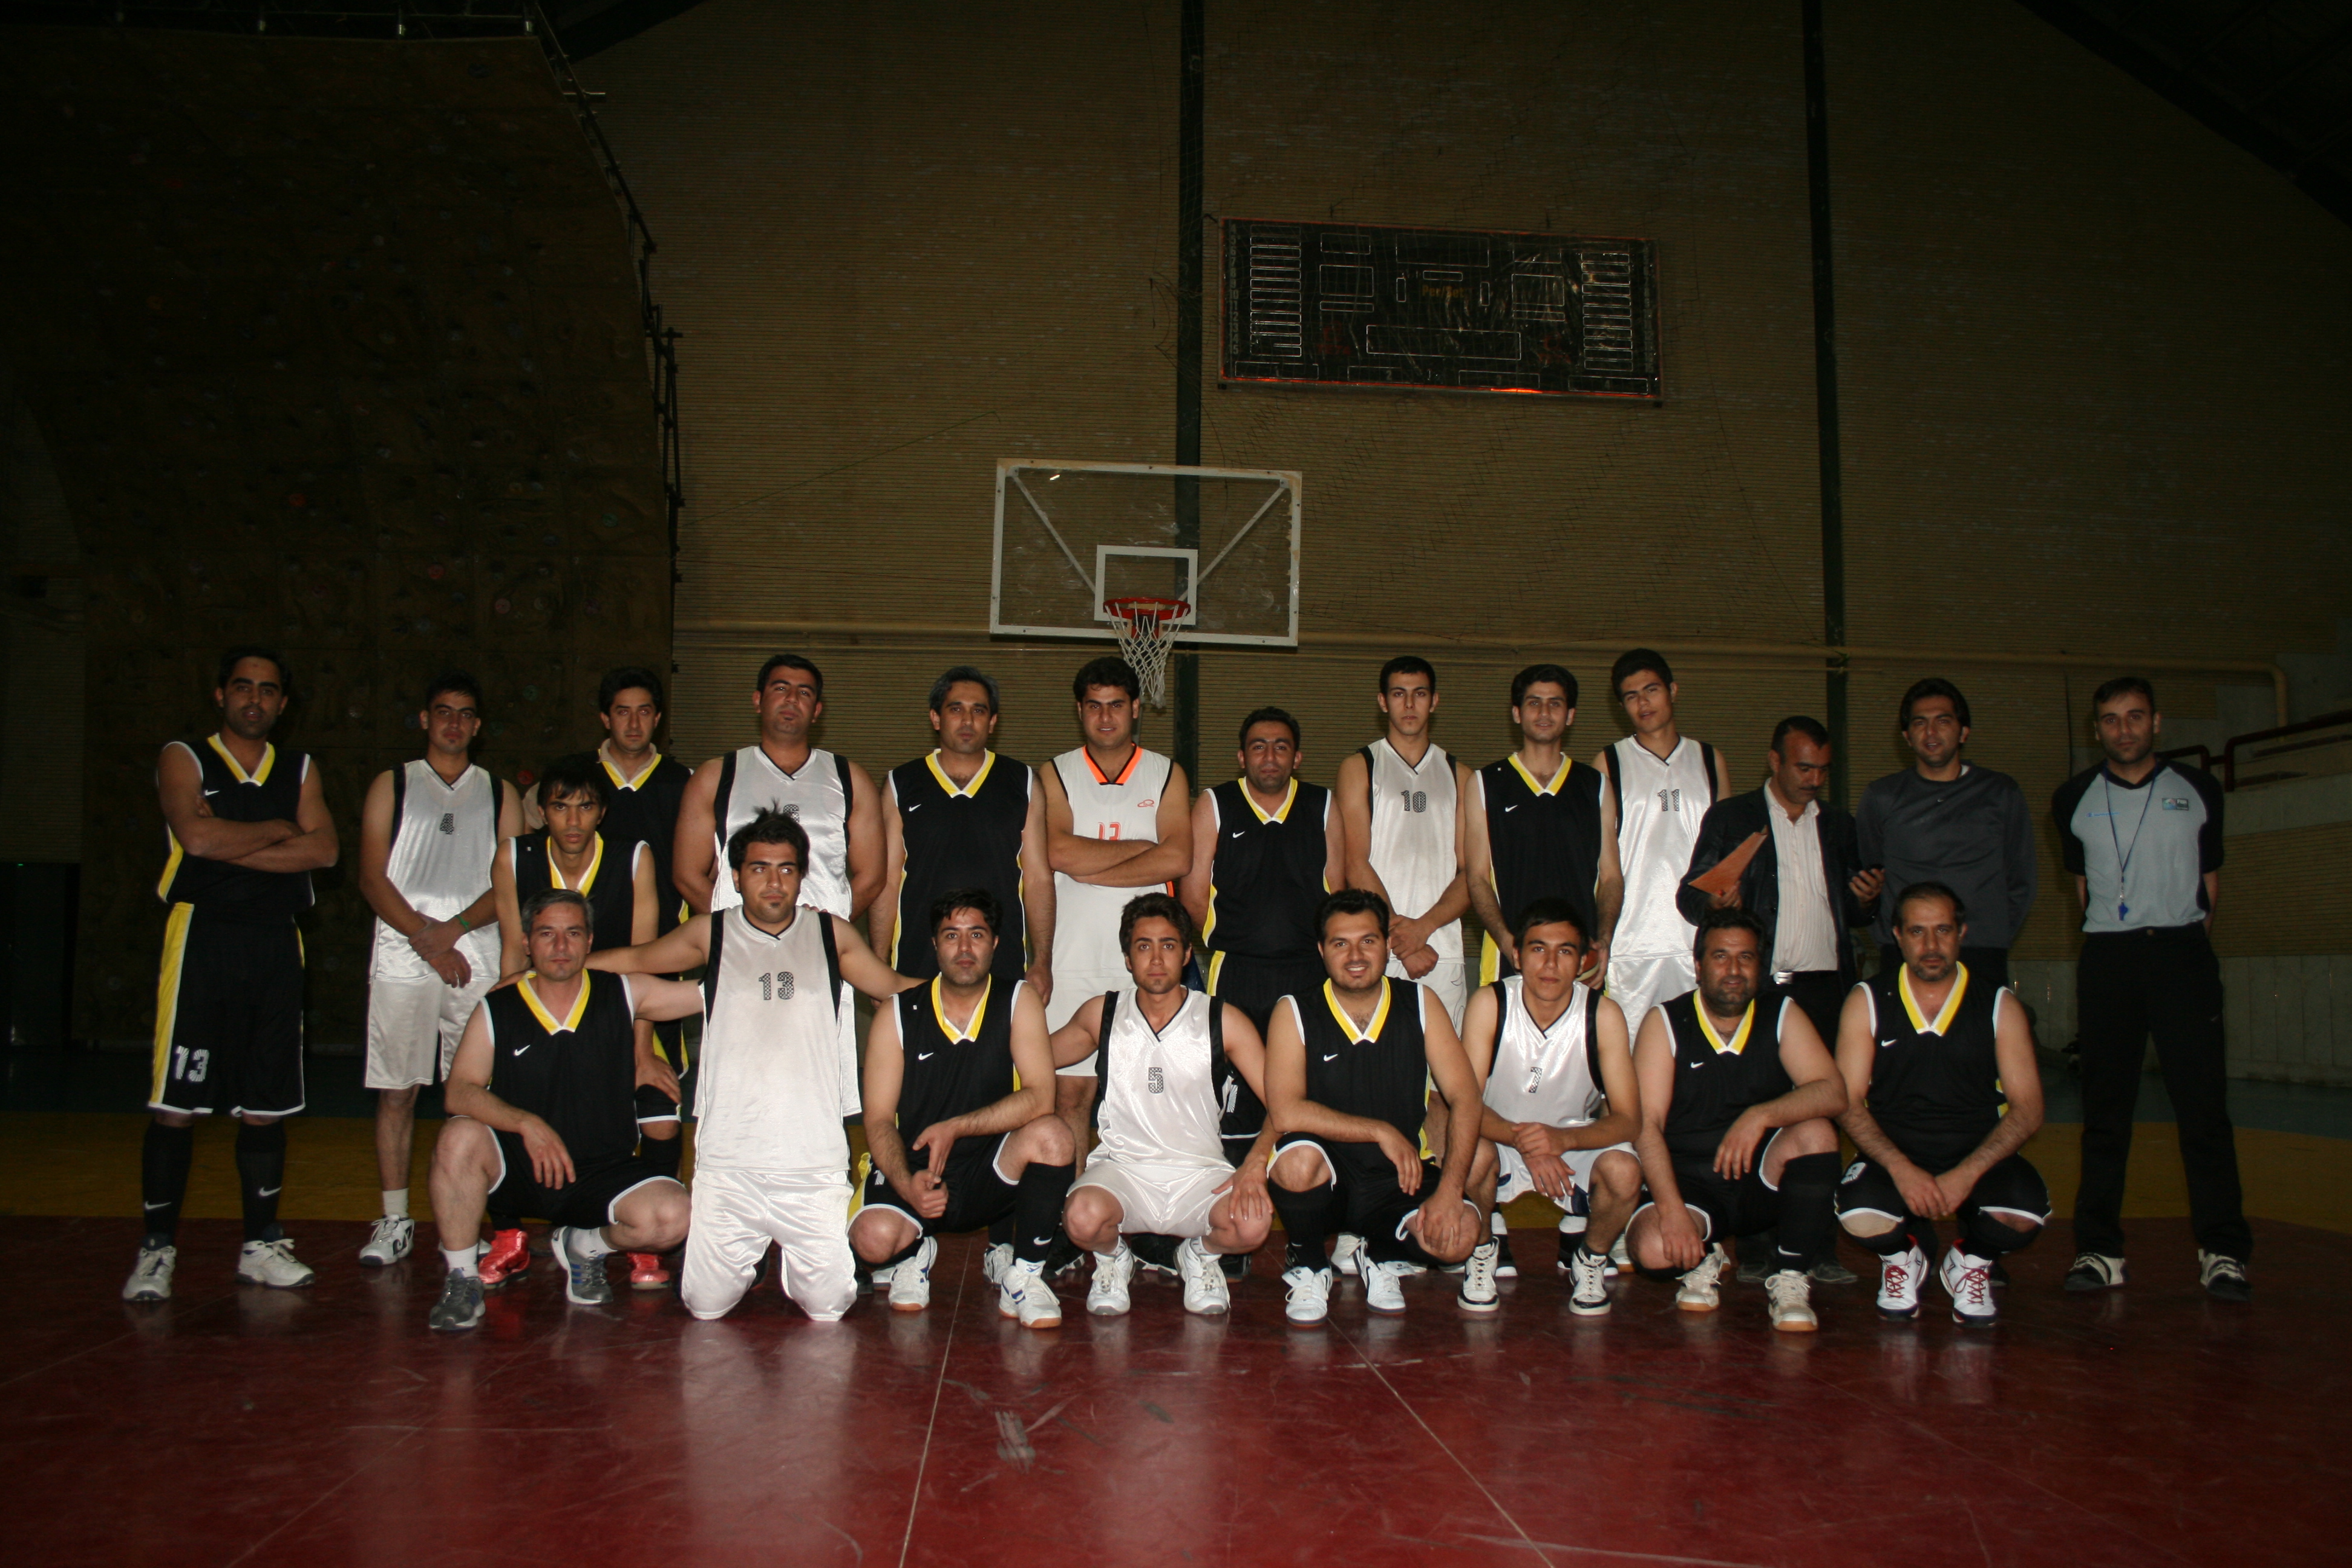 تیم شرکت توزیع نیروی برق استان در مسابقات بسکتبال قهرمان شد.